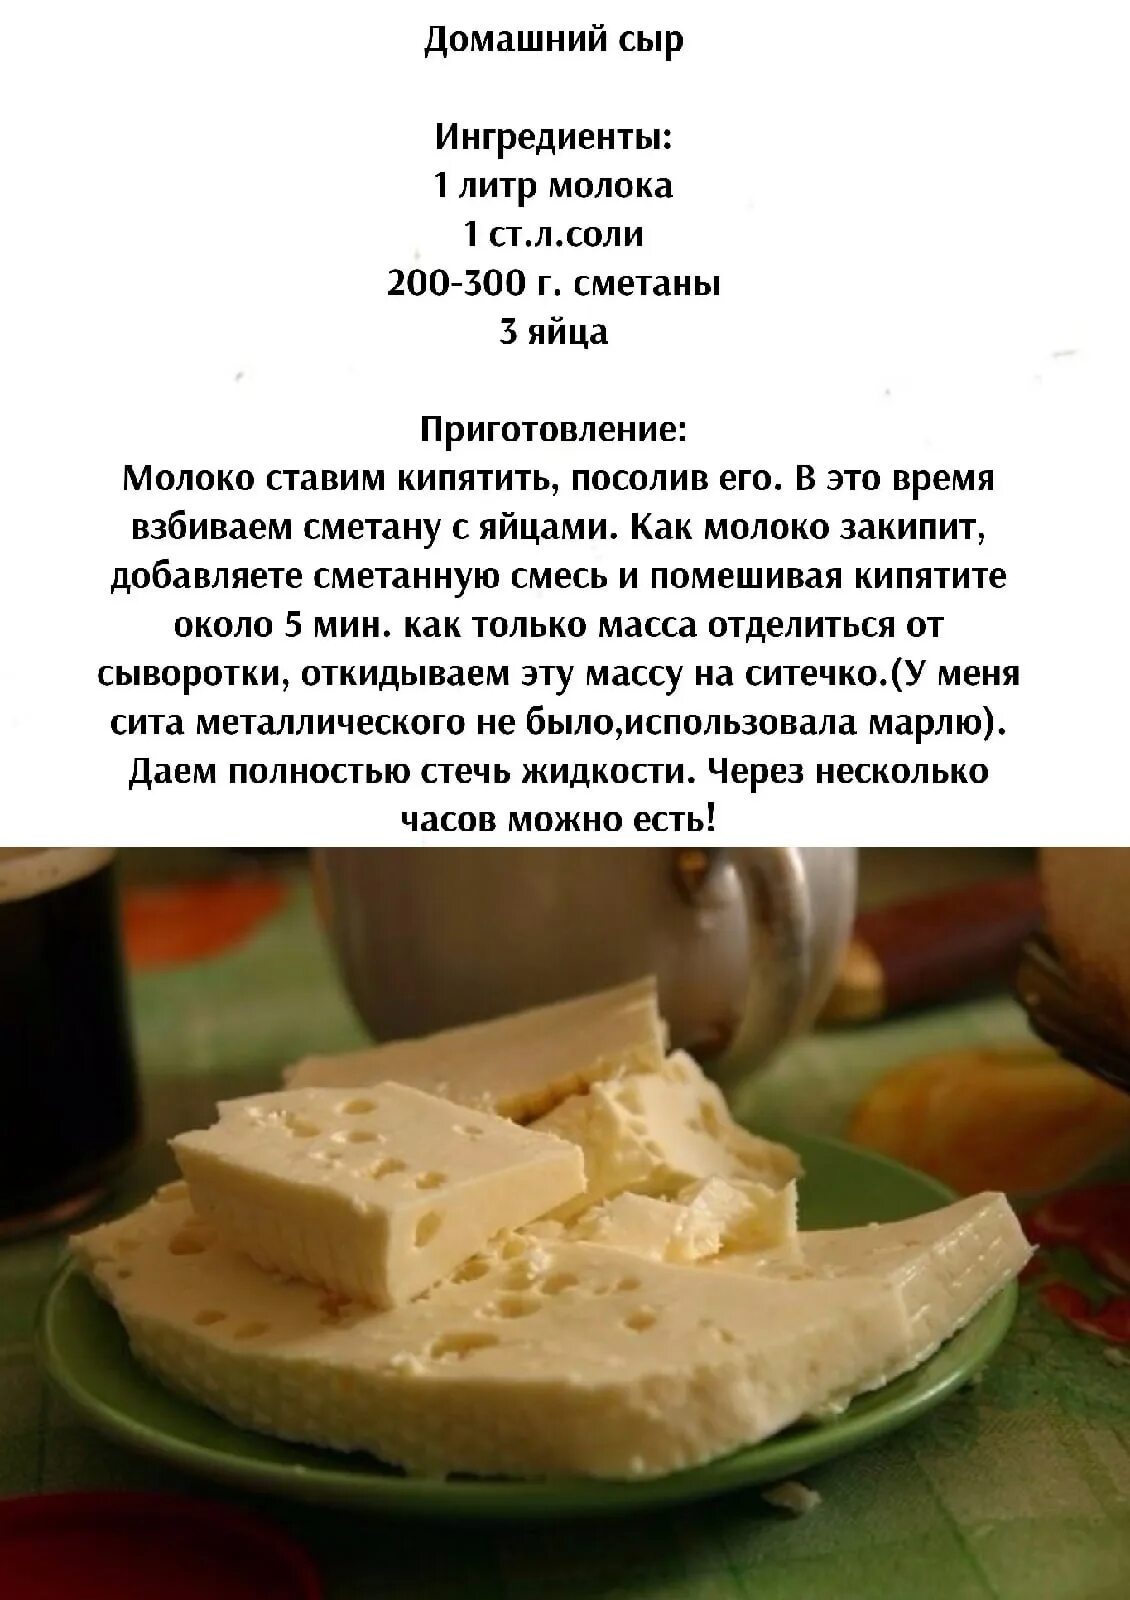 Сделать домашний сыр из творога рецепт. Сыр в домашних условиях рецепт. Сыр в домашних условиях из молока простой рецепт. Реклама домашнего сыра текст. Сыр Надежда Ростов.